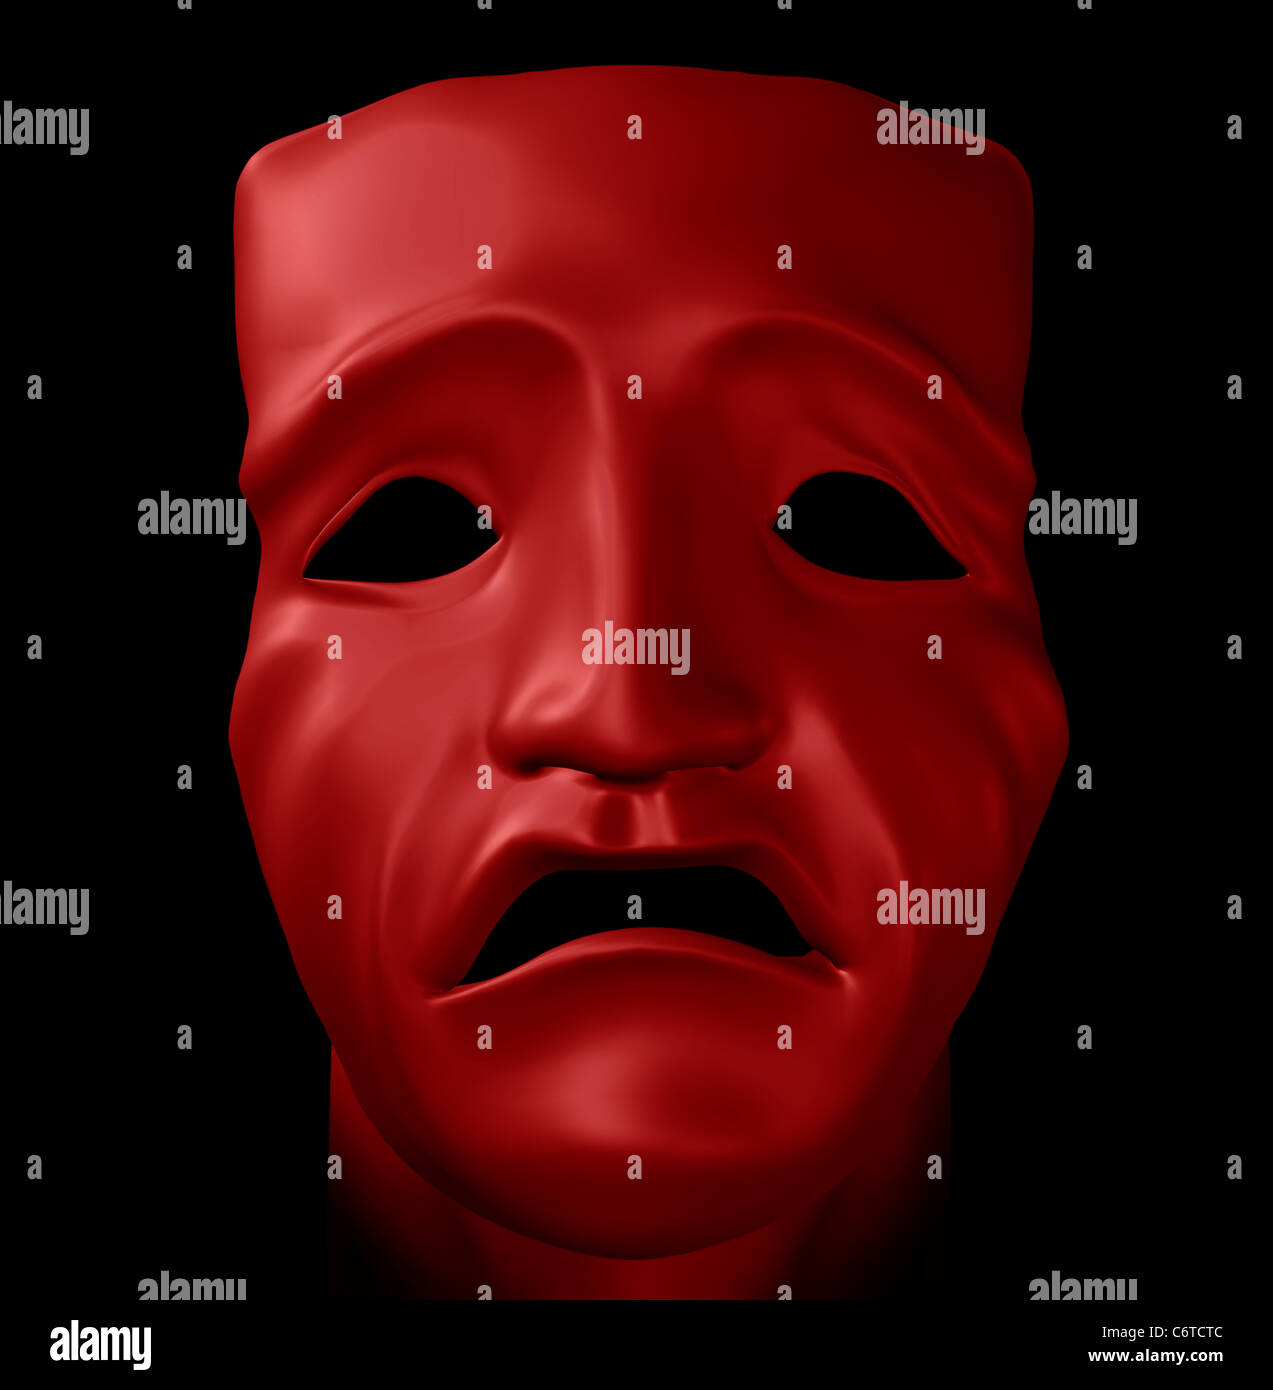 La figure avec masque tragique sur fond noir. Création numérique 3d illustration. Banque D'Images